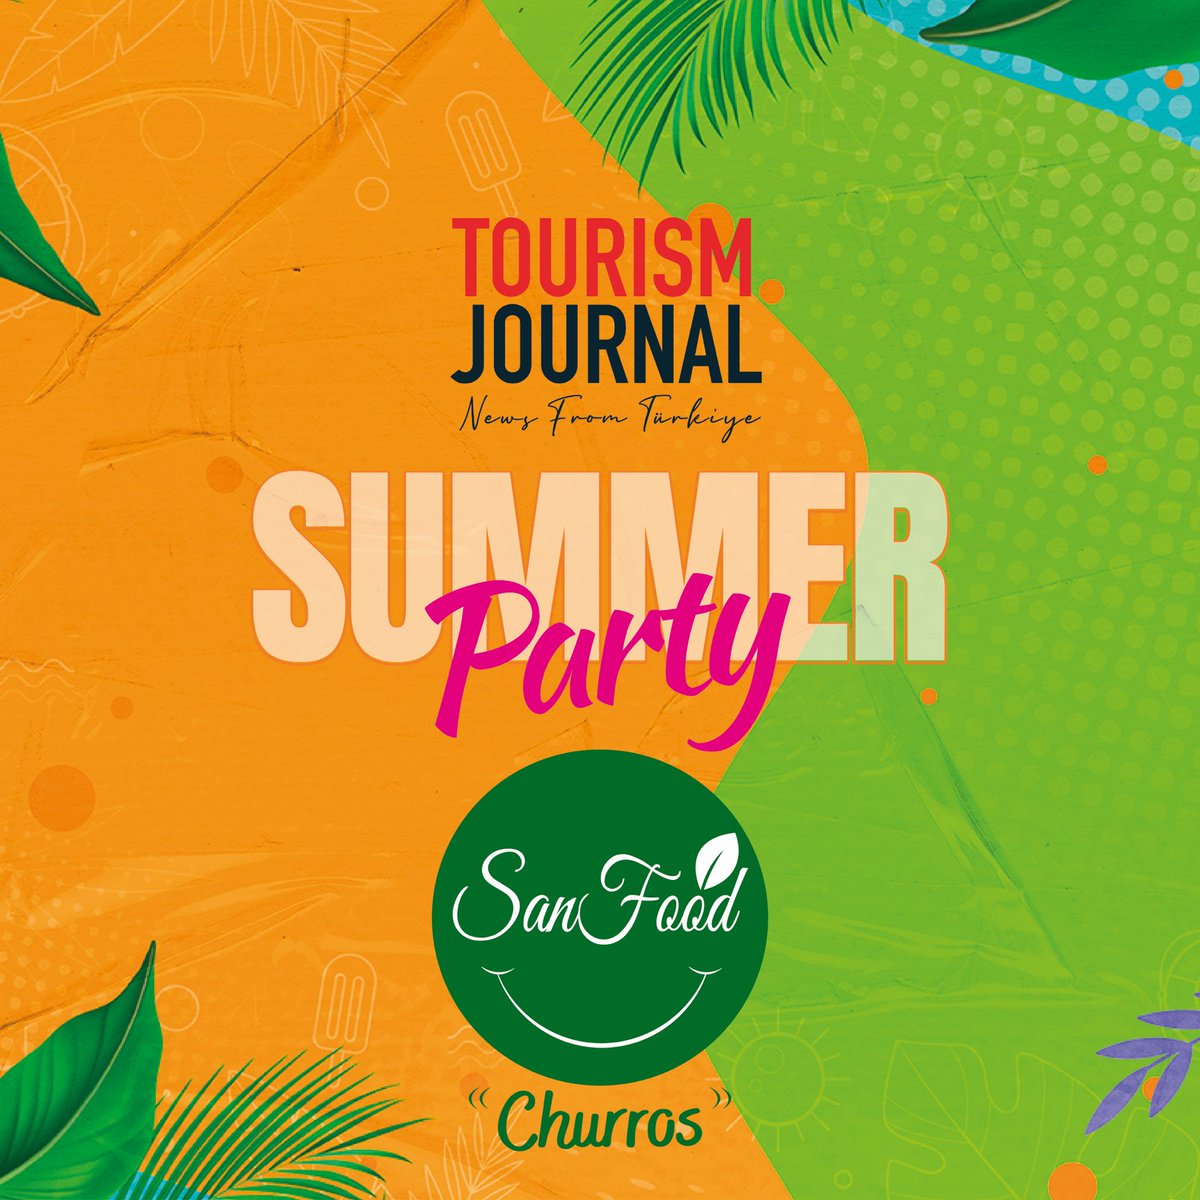 #TourismJournalSummerParty’de bizlere sponsor olarak eşlik eden San Food Churros’a teşekkür ediyoruz.

#SanFoodChurros #SanFood #Churros #SummerParty #Antalya